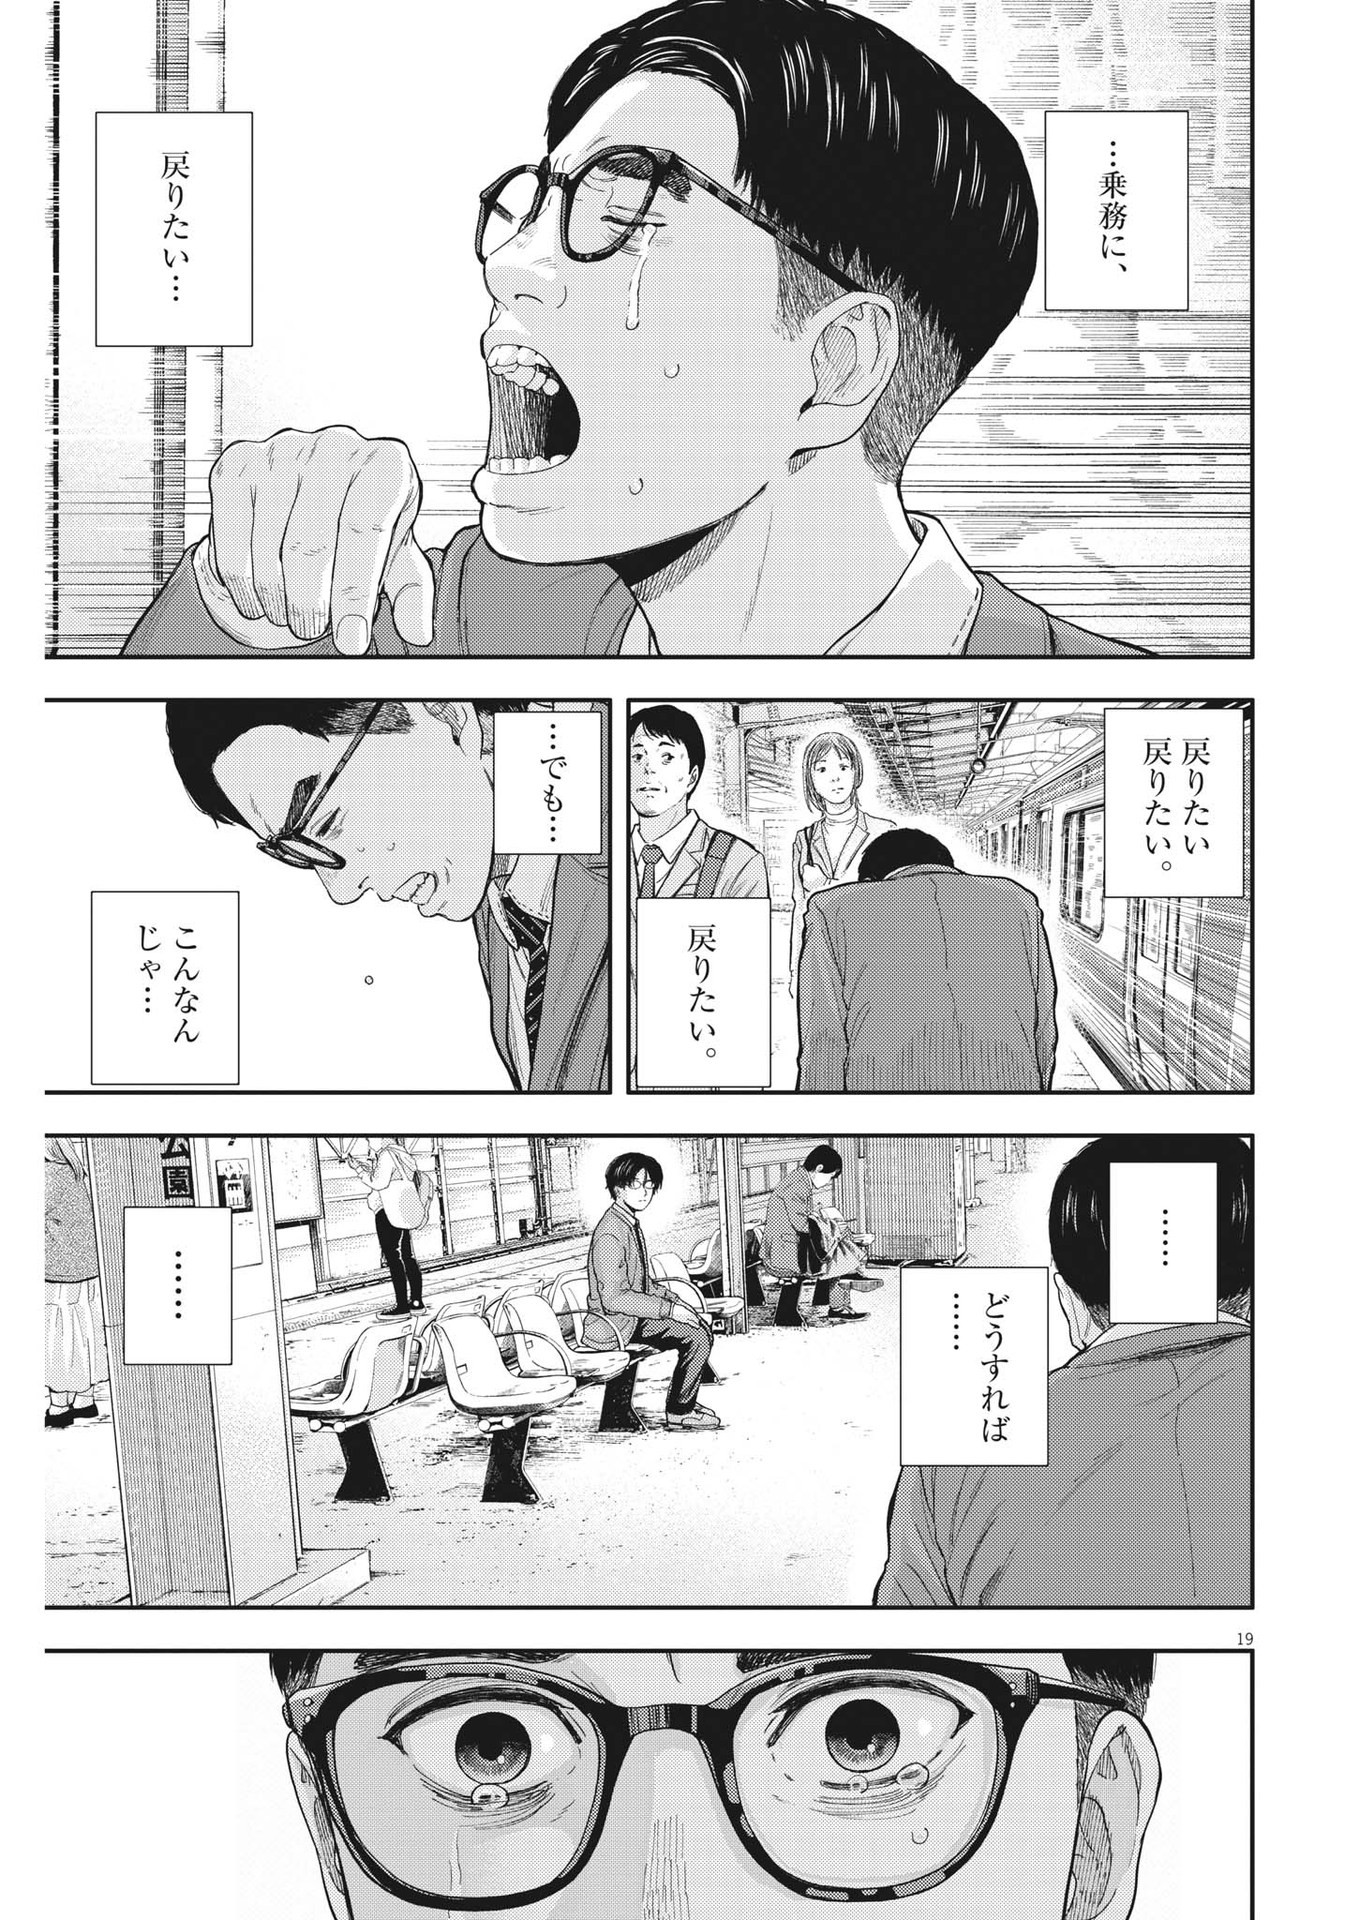 Yumenashi-sensei no Shinroshidou - Chapter 4 - Page 19